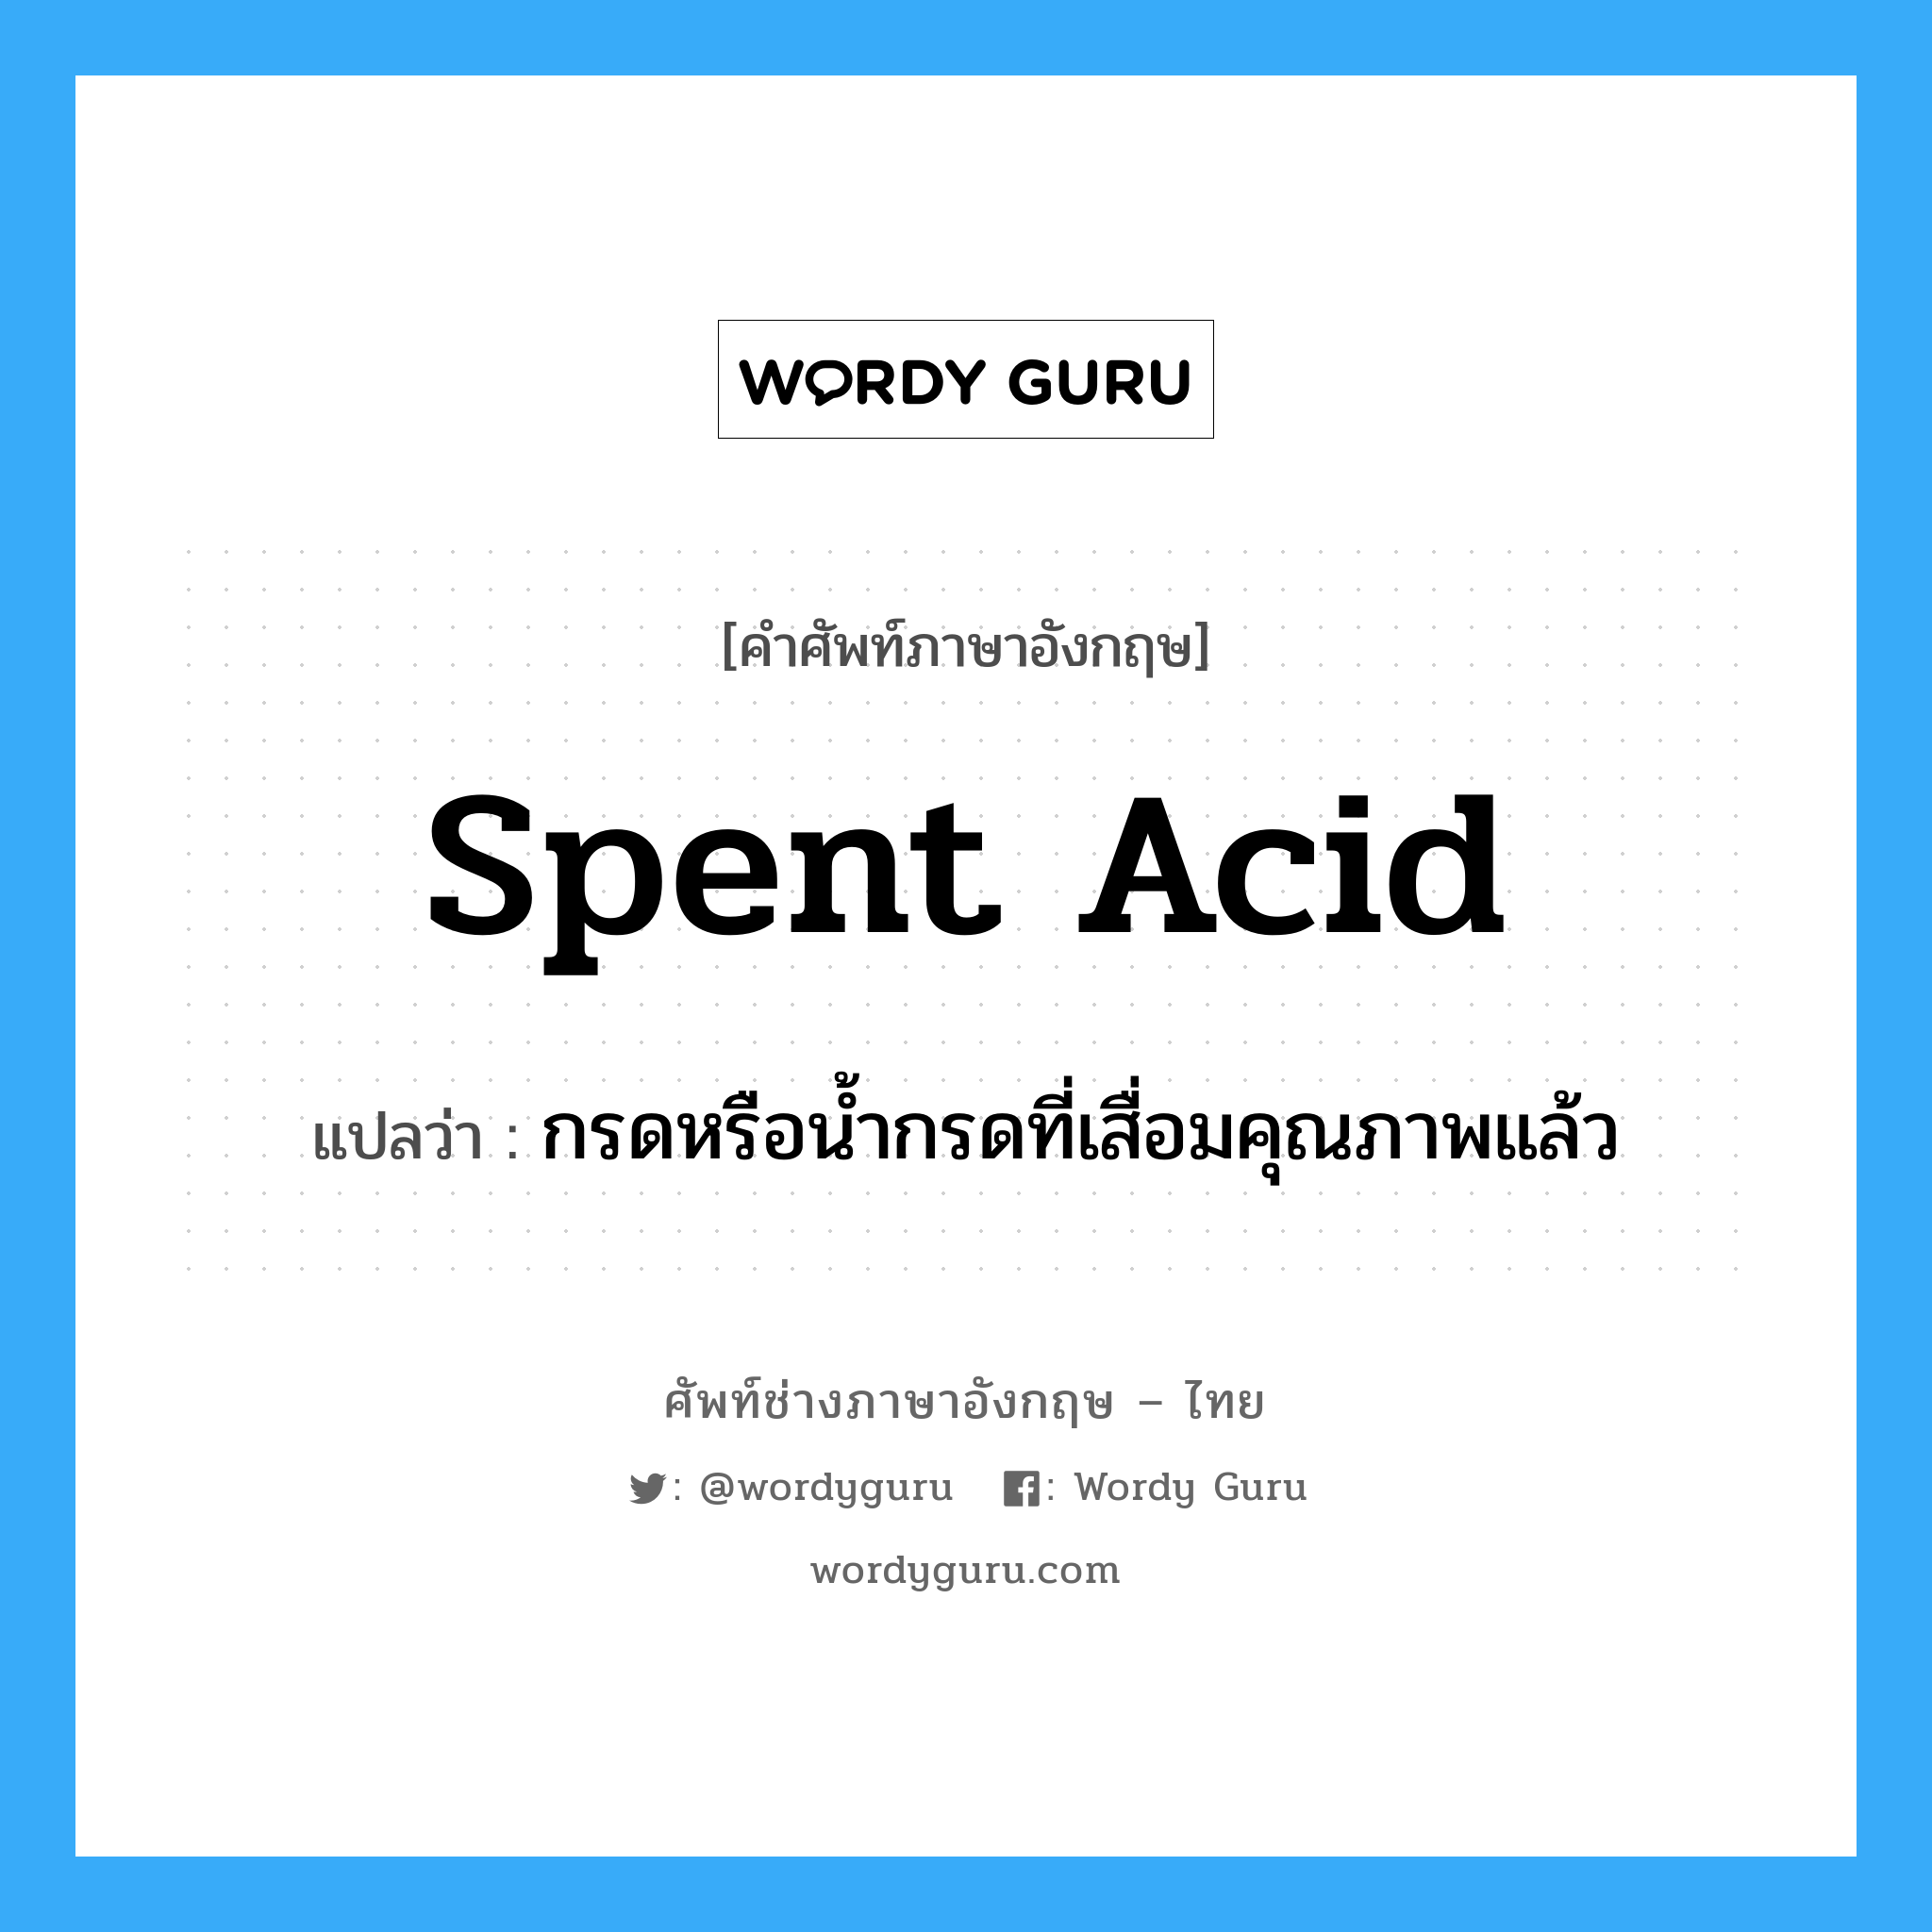 spent acid แปลว่า?, คำศัพท์ช่างภาษาอังกฤษ - ไทย spent acid คำศัพท์ภาษาอังกฤษ spent acid แปลว่า กรดหรือน้ำกรดที่เสื่อมคุณภาพแล้ว